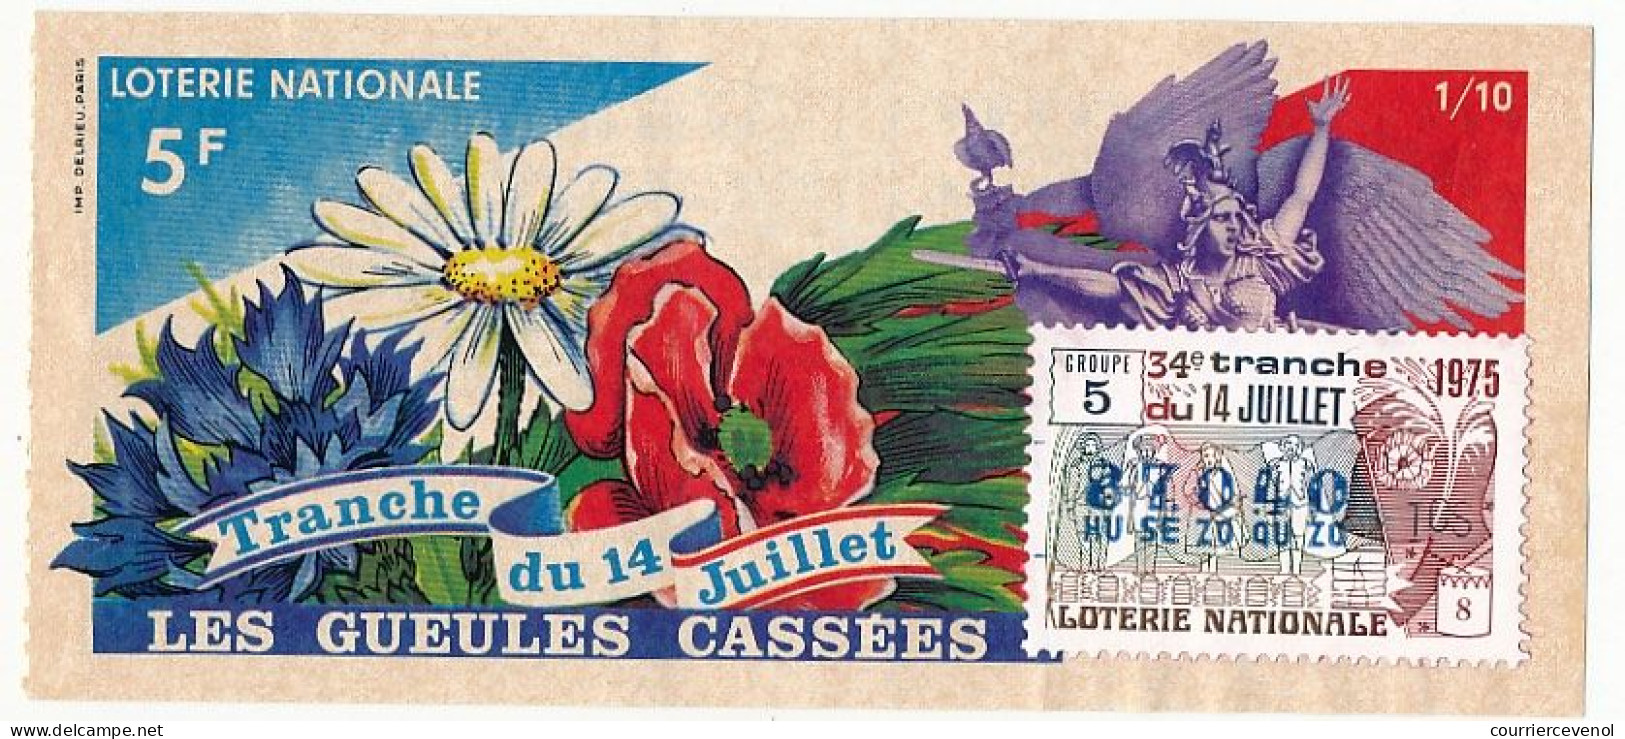 FRANCE - Loterie Nationale - Tranche Du 14 Juillet - Gueules Cassées - 34ème Tranche 1975 1/10ème - Loterijbiljetten